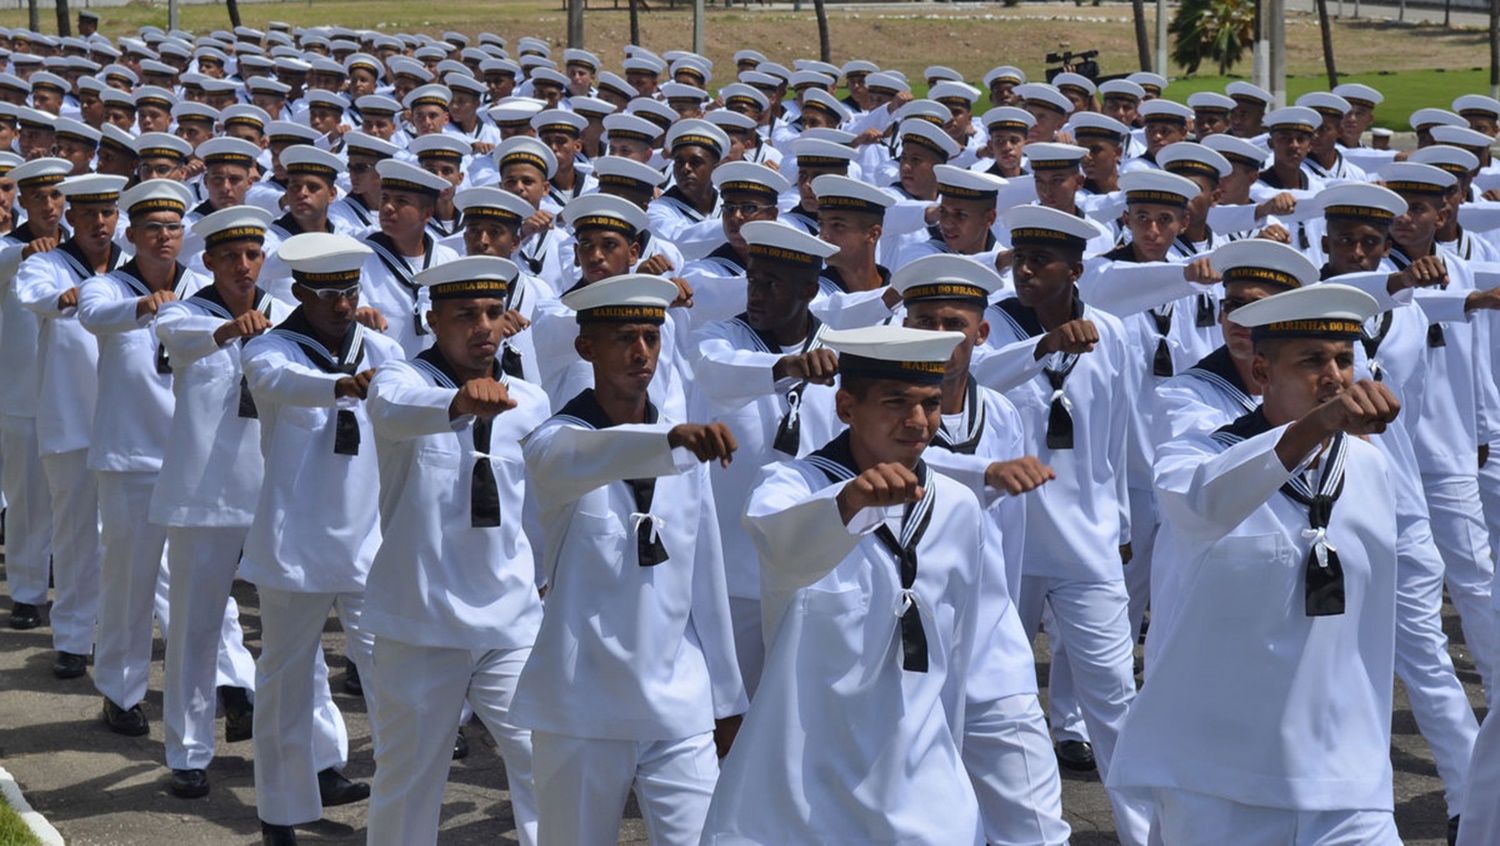 AMBOS OS SEXOS: Marinha abre novo concurso para aprendizes com 686 vagas